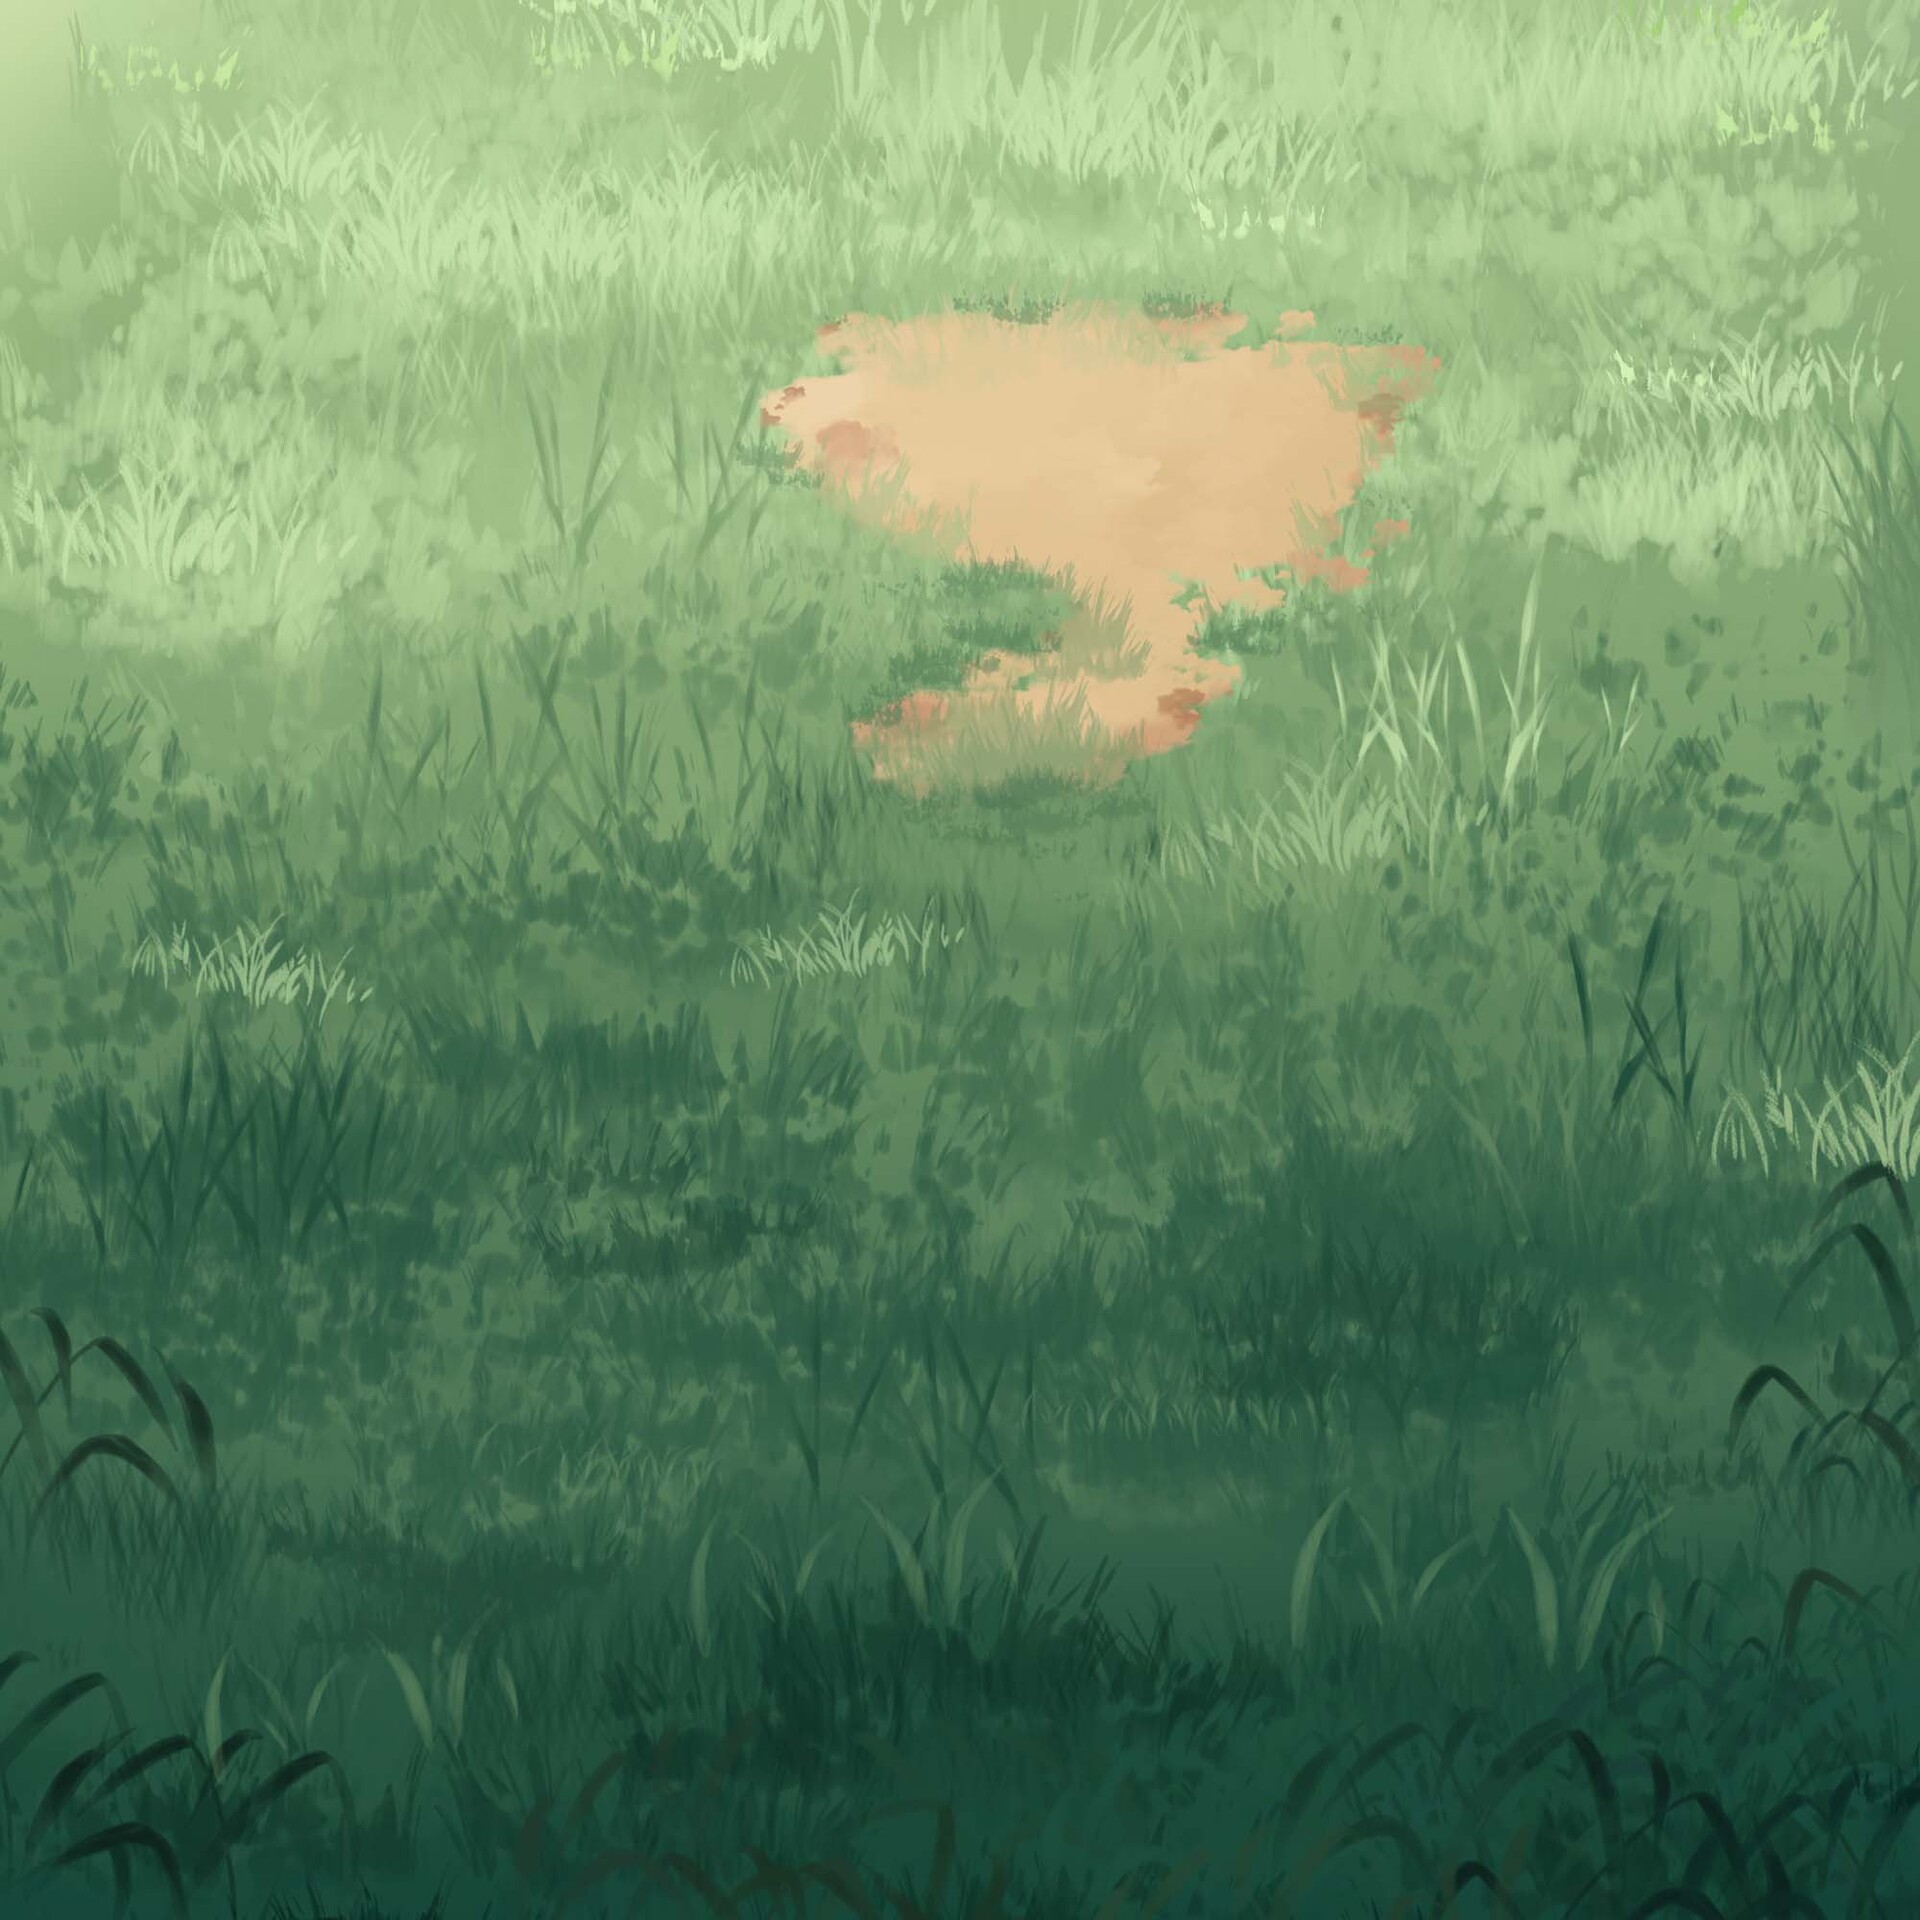 ArtStation - anime grass